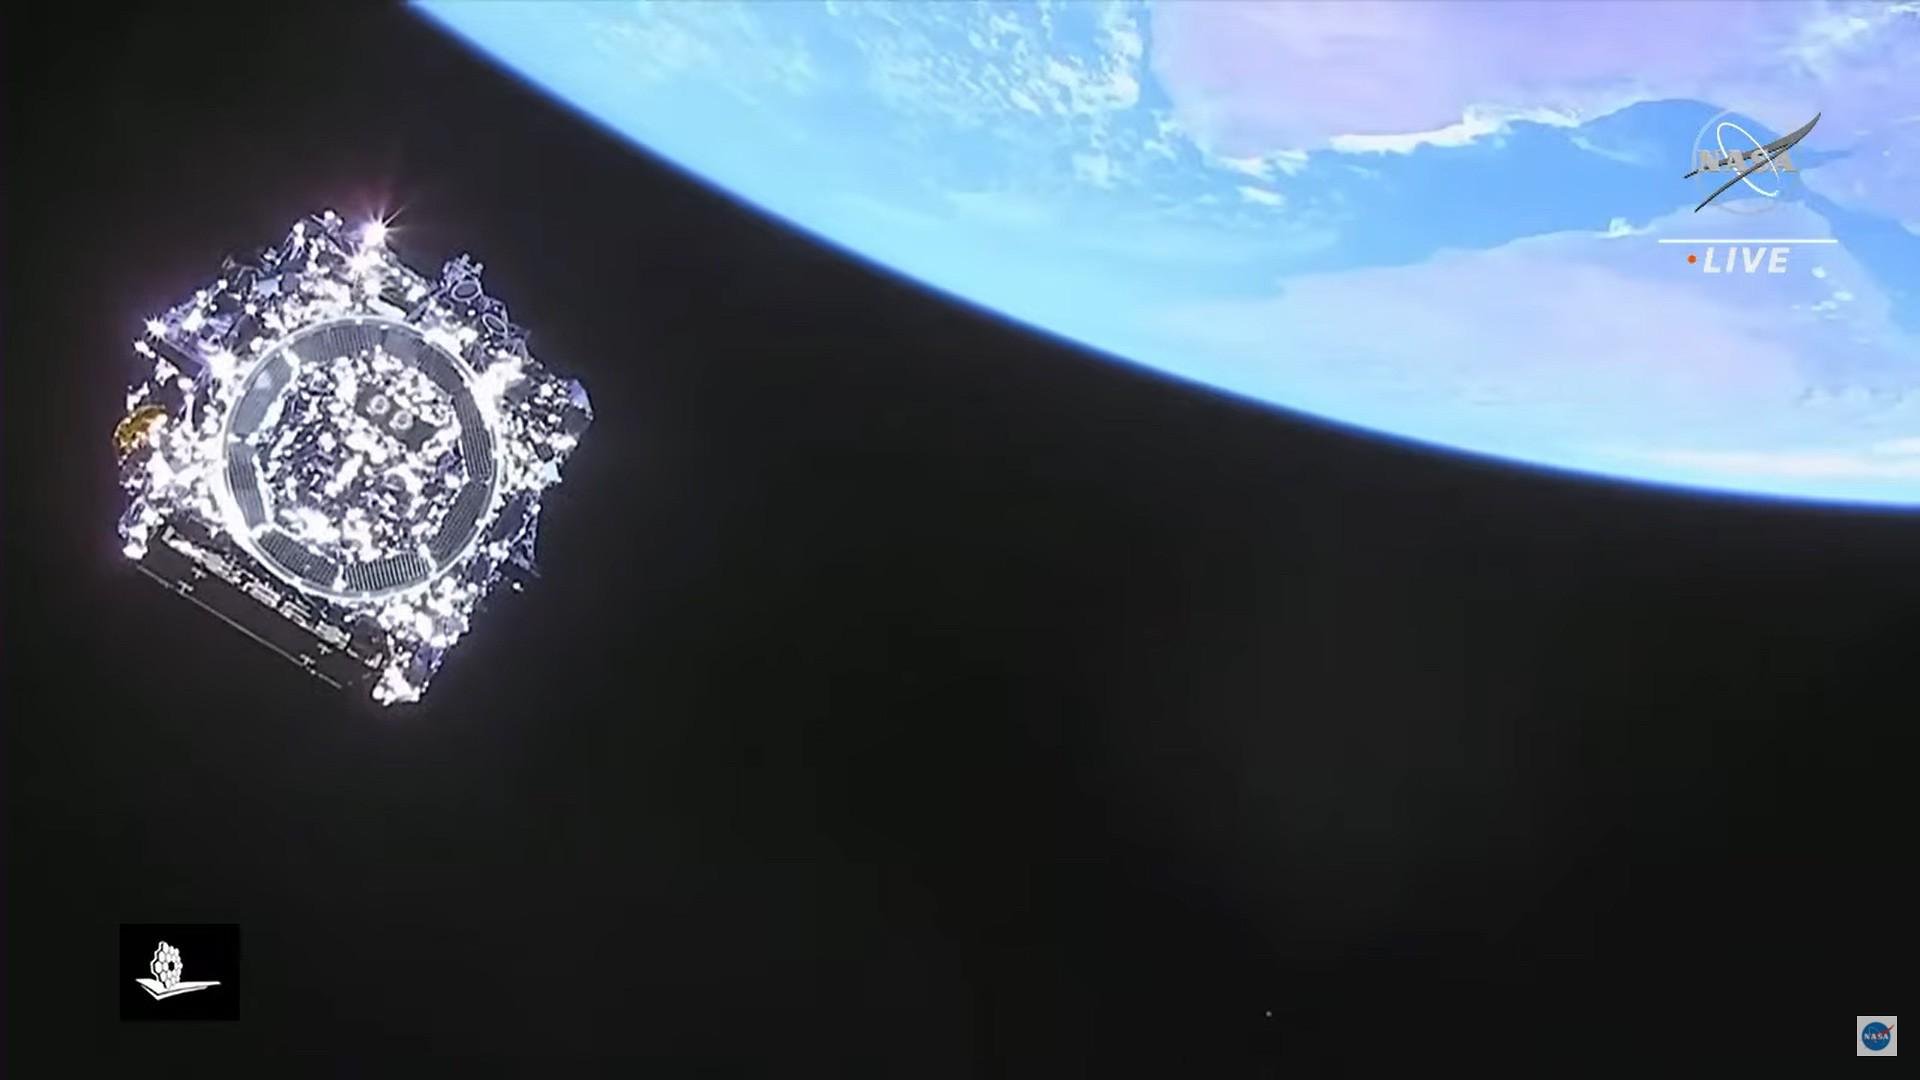 Última foto tirada do telescópio James Webb, logo após ele desacoplar do foguete que o levou ao espaço (Fonte: NASA)